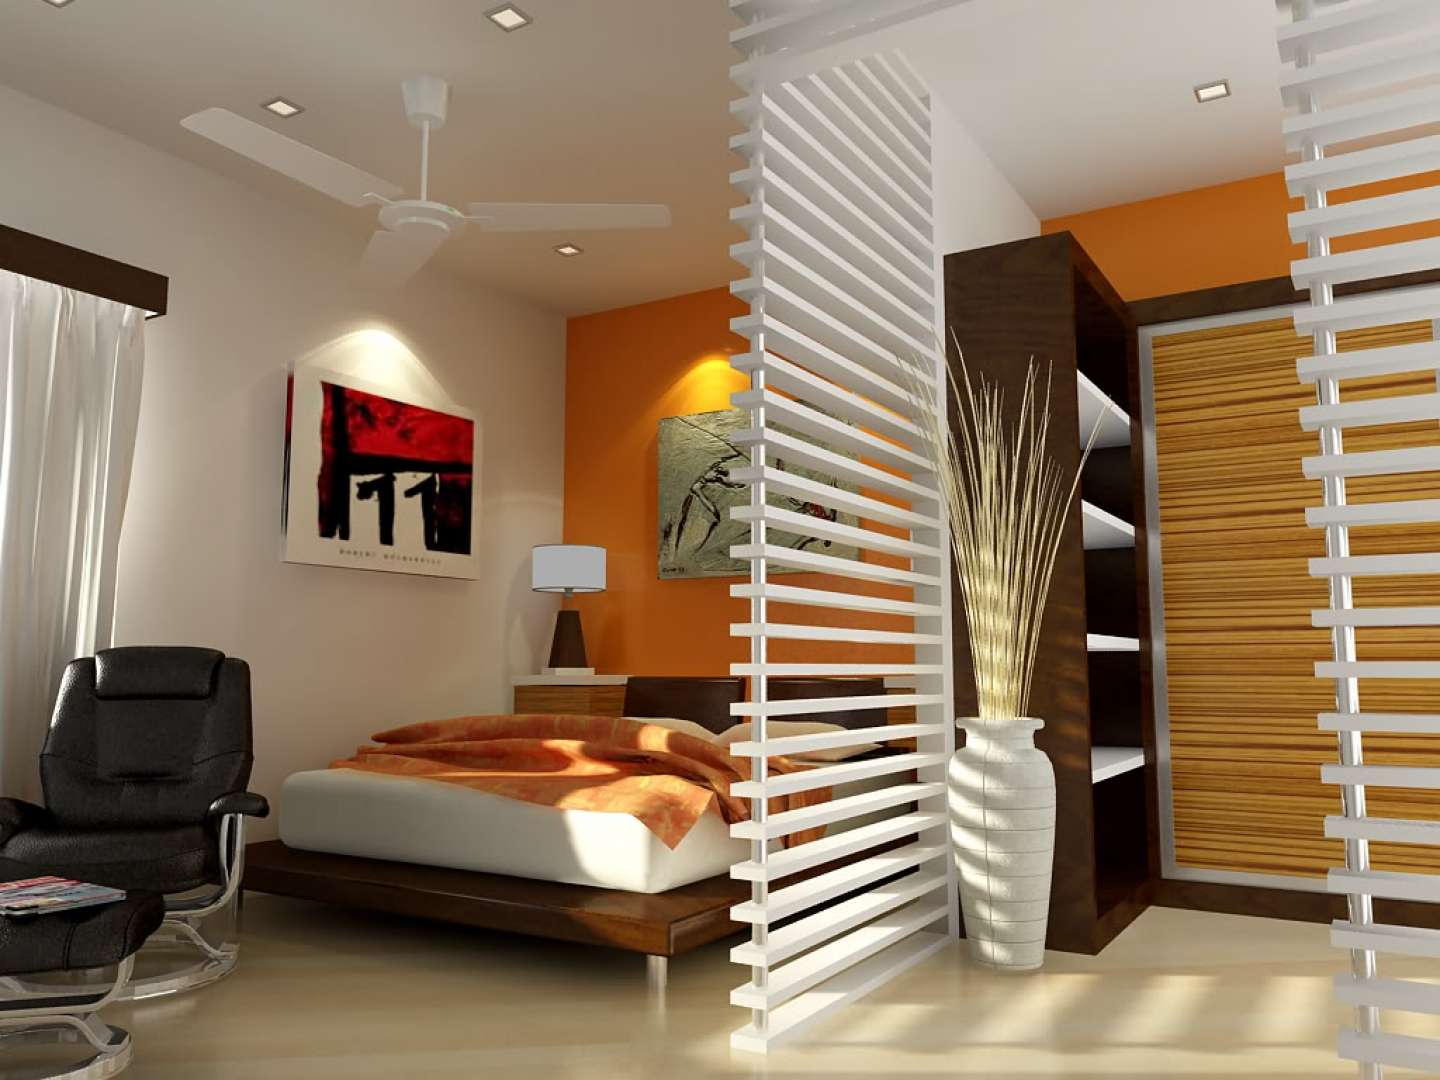 Дизайн спальни 7 кв метров с фото